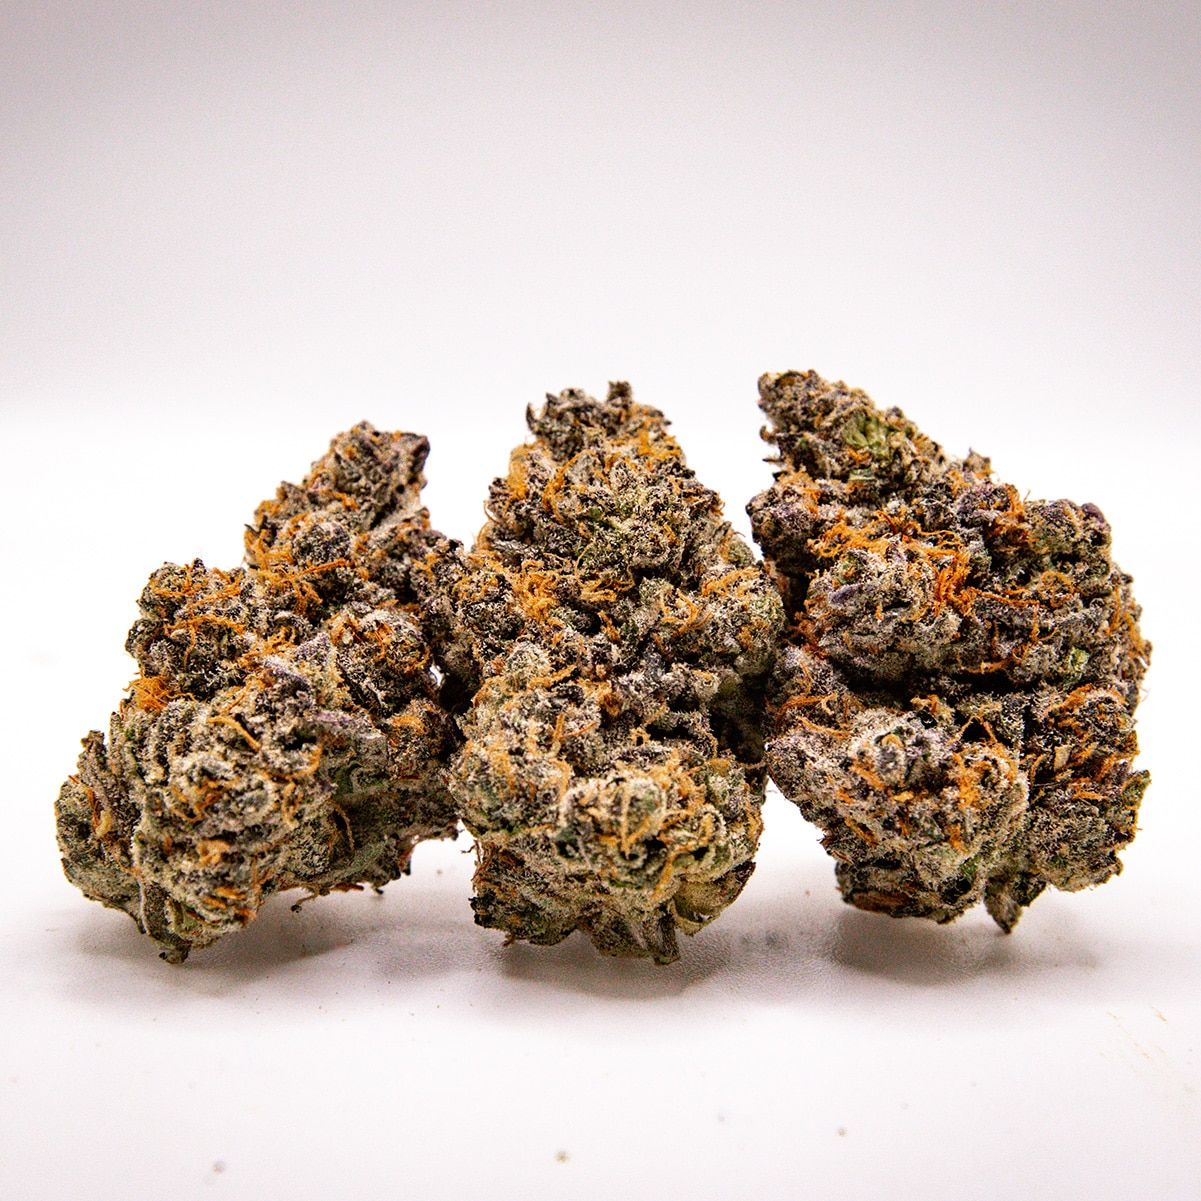 Purple OP Cannabis flower